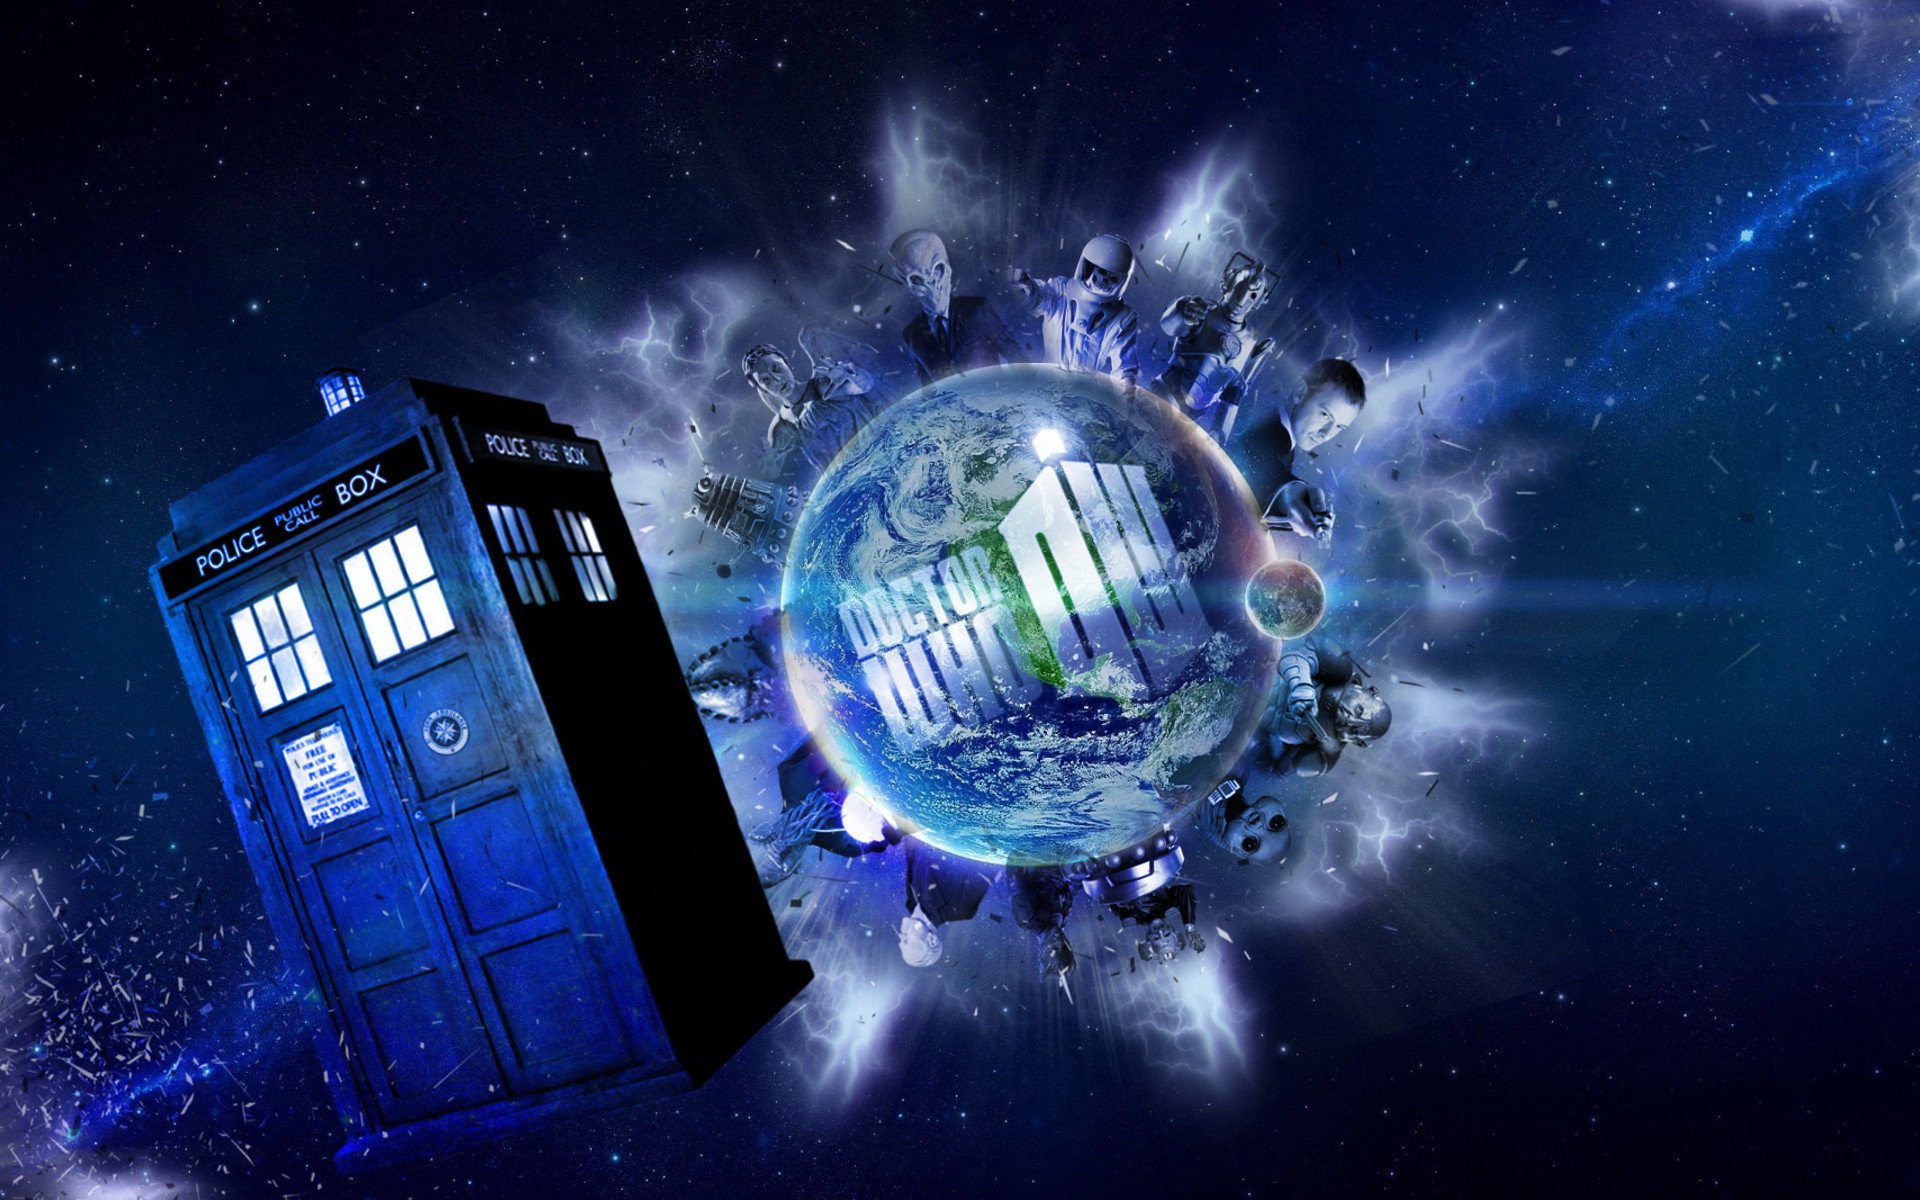 doctor, Who, Bbc, Sci fi, Futuristic, Series, Comedy, Adventure, Drama, 1dw...